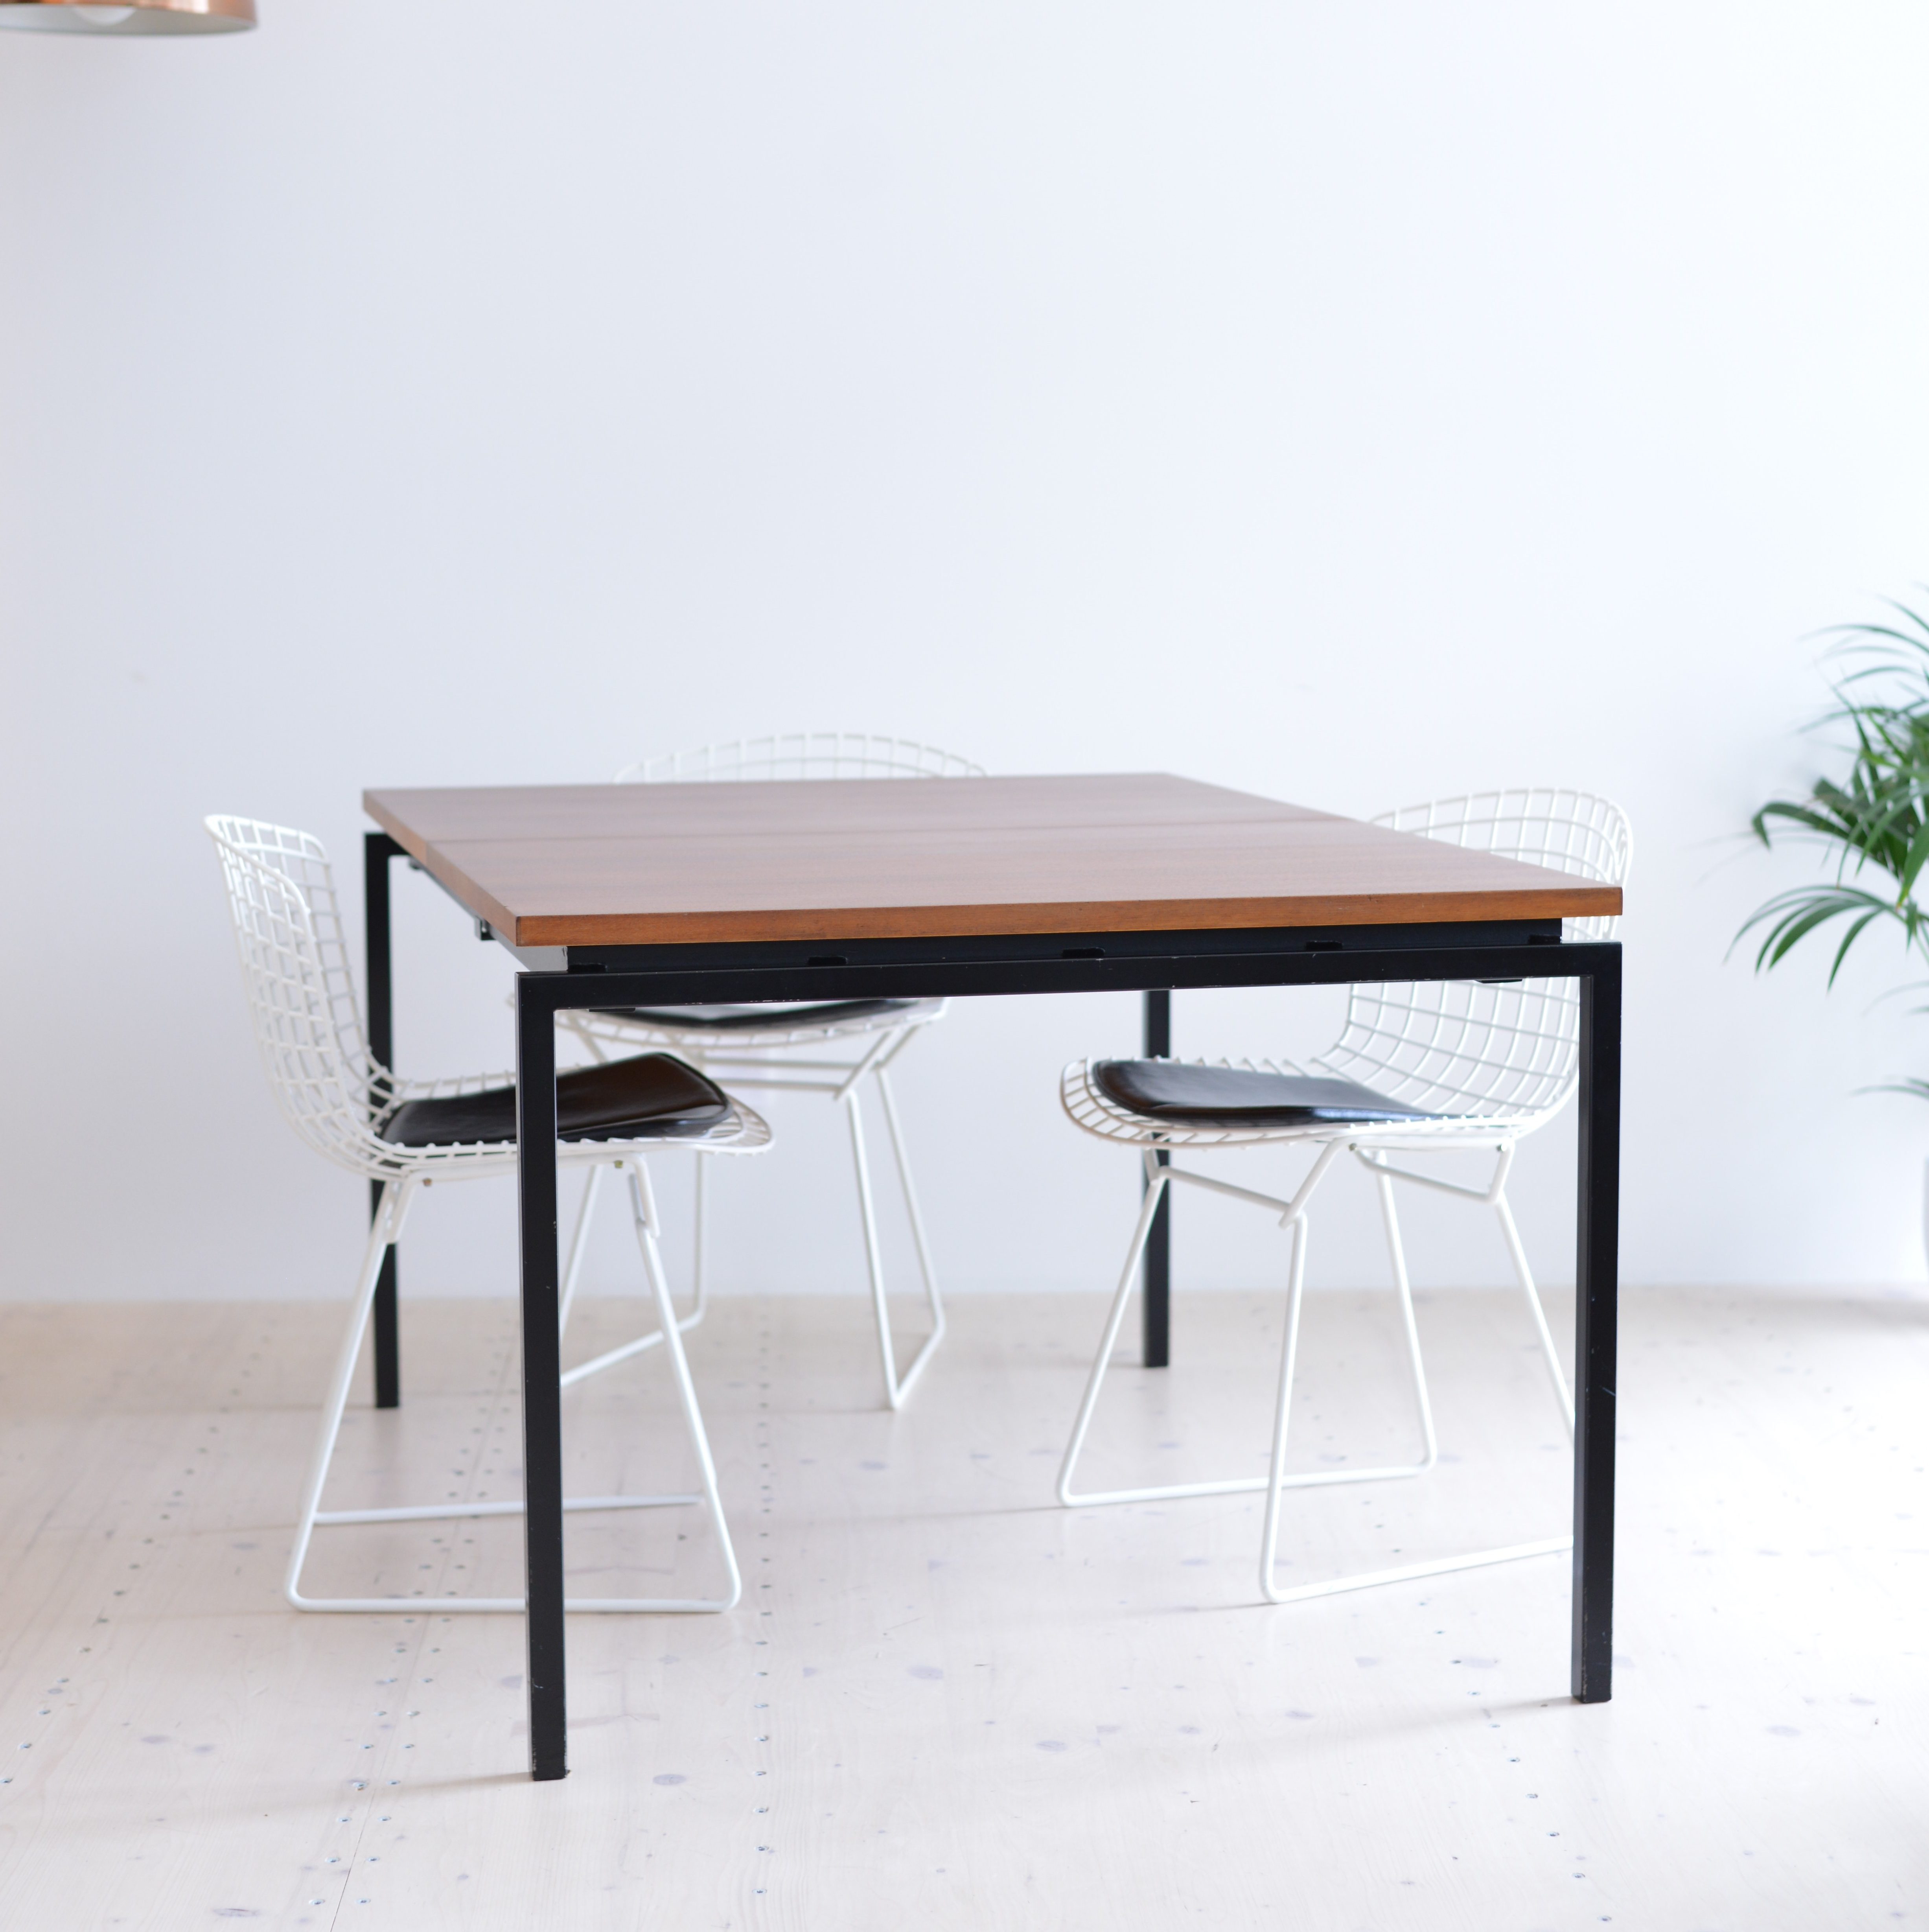 Ulrich P. Wieser Tisch Table Wohnbedarf heyday möbel moebel Zürich Zurich Swiss Design